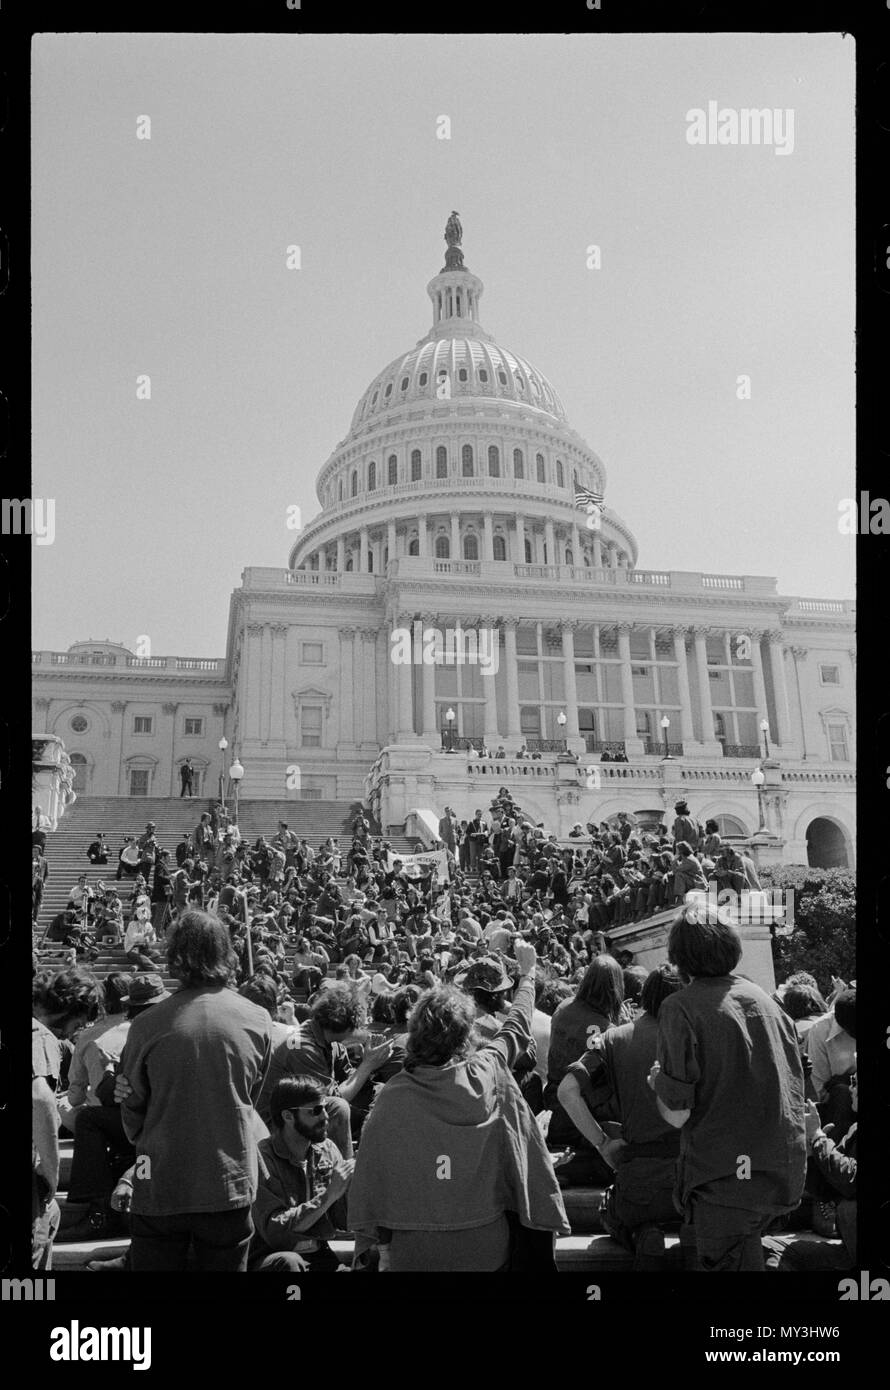 Hunderte von Vietnam Veteranen am U S Capitol gegen den Vietnam Krieg, Washington, DC, 4/19/1971. Foto von Marion S. Trikosko. Stockfoto